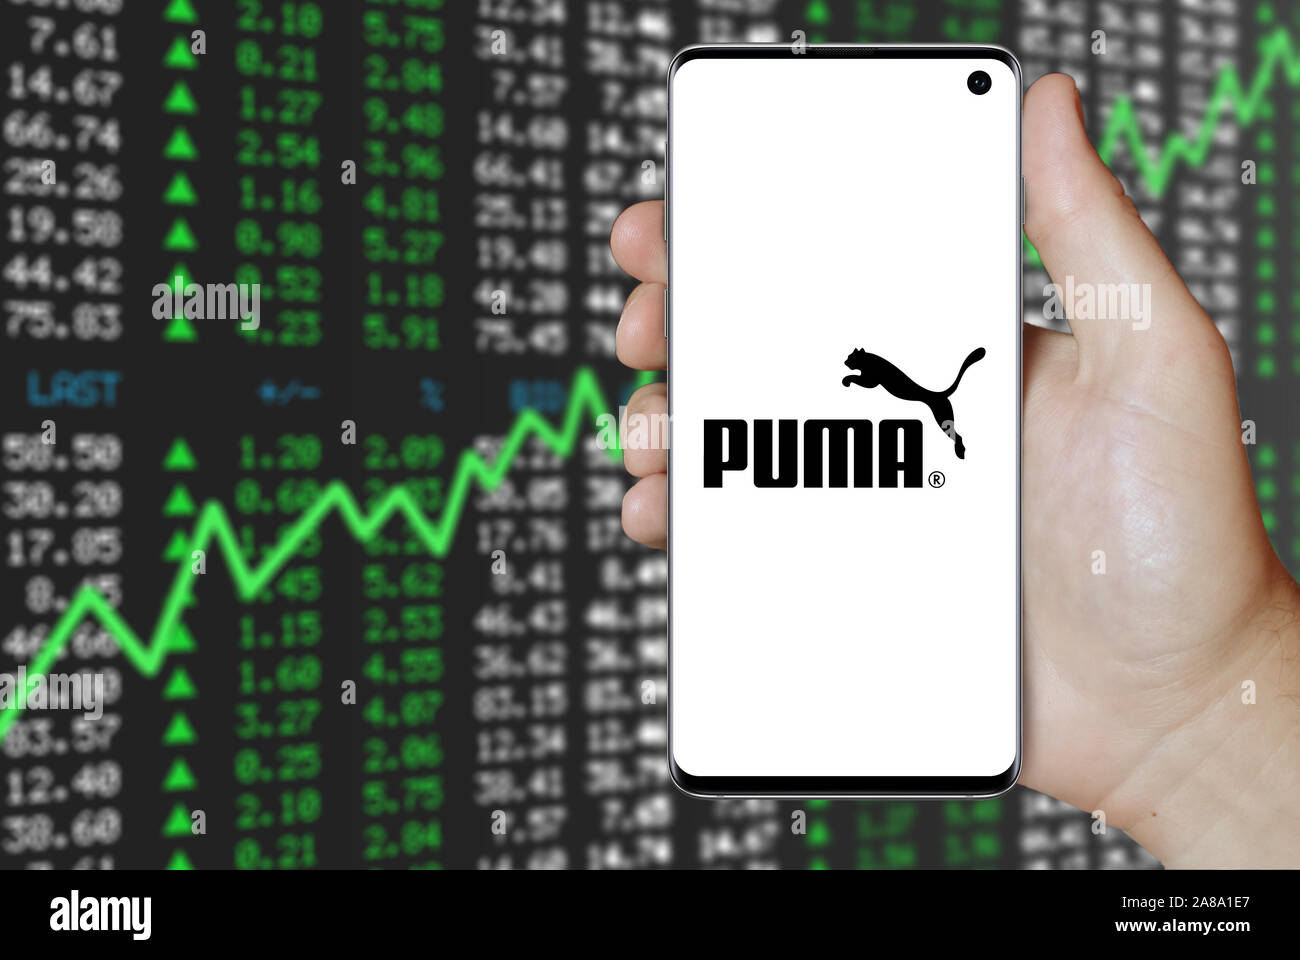 Price puma share